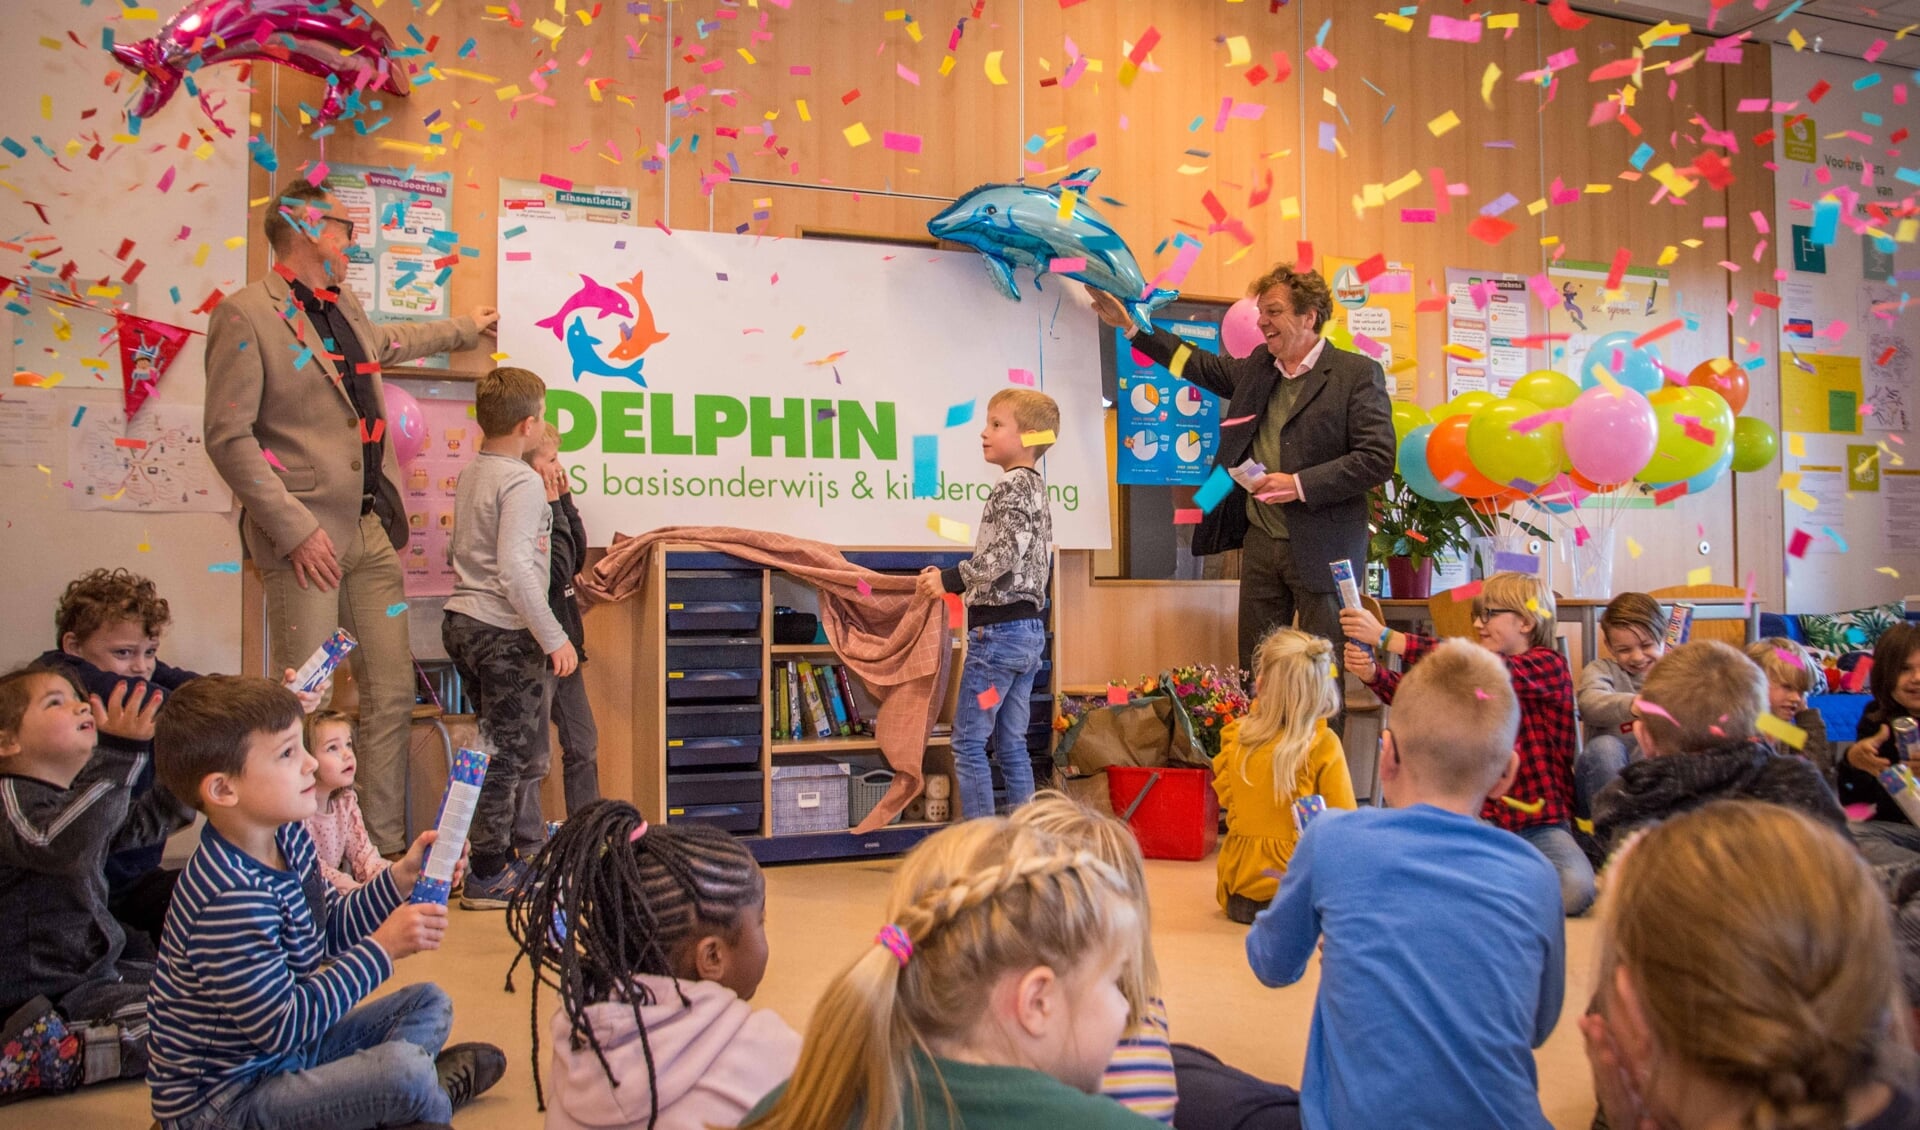 Wethouder Lars van der Beek en directeur Ab de Laater onthullen het nieuwe logo 'Delphin'.